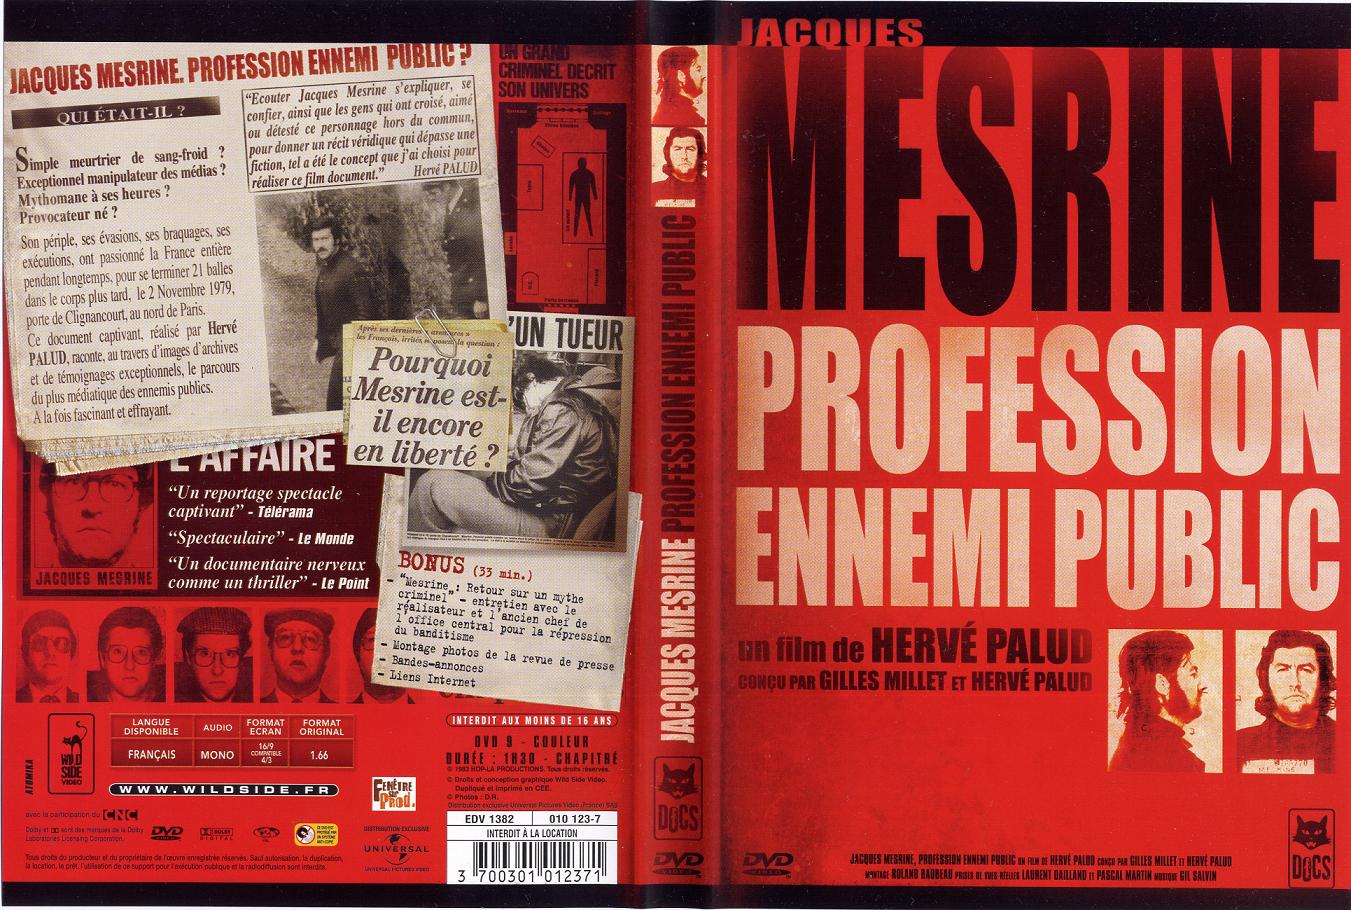 Jaquette DVD Jacques Mesrine - Profession ennemi public